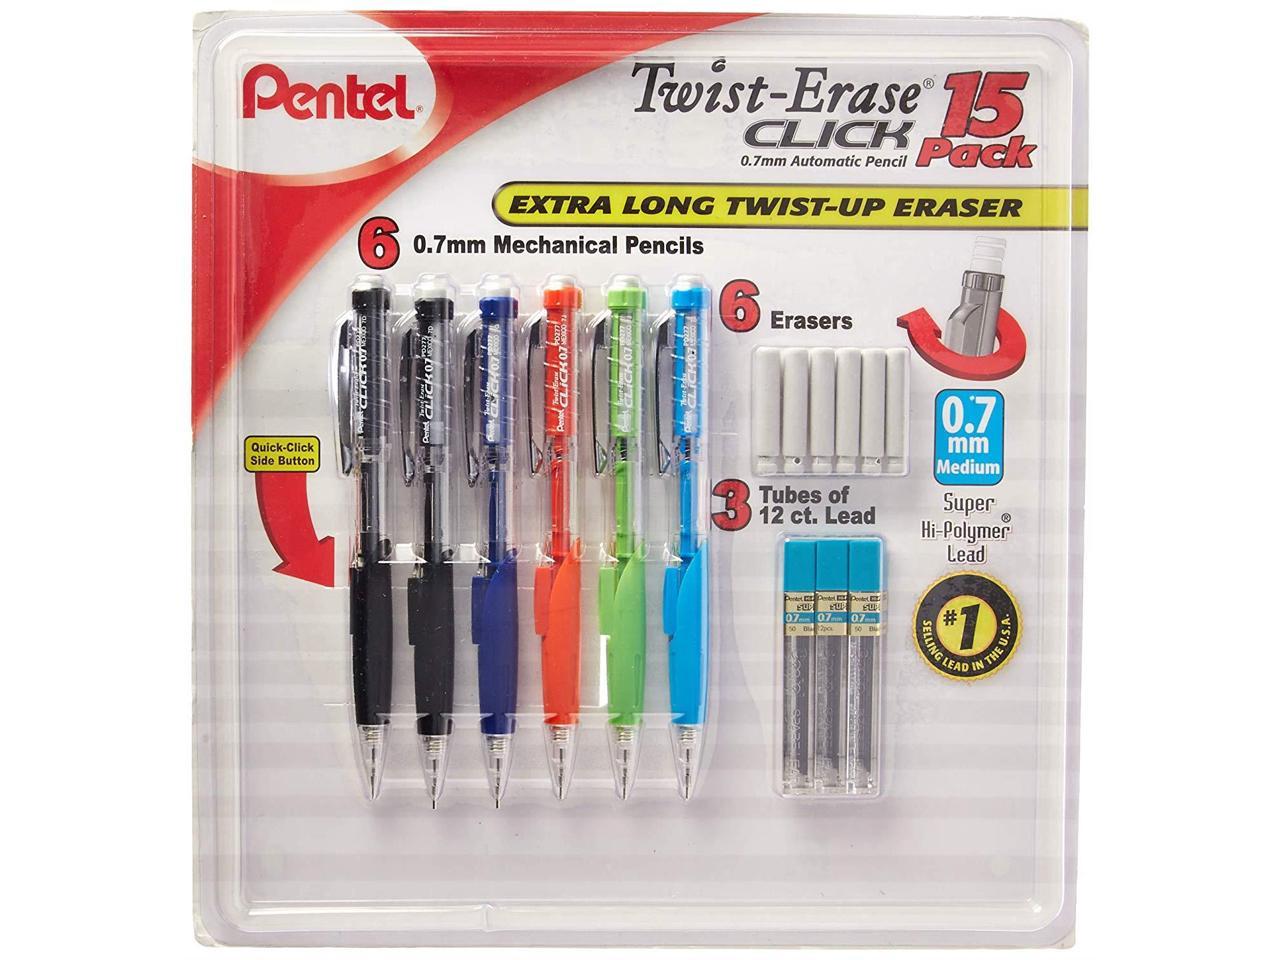 4 Erasers Per Tube 12 tubes Z2-1N White Pentel Refill Eraser for Mechanical Pencils 